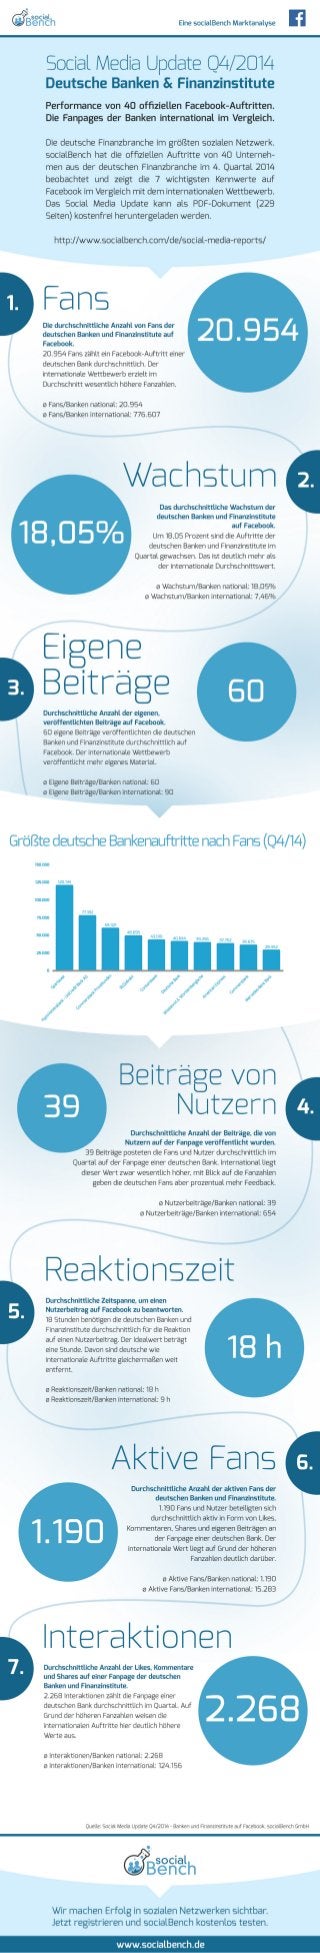 Infografik: Social Media Update Q4/2014 - Banken und Finanzinstitute auf Facebook